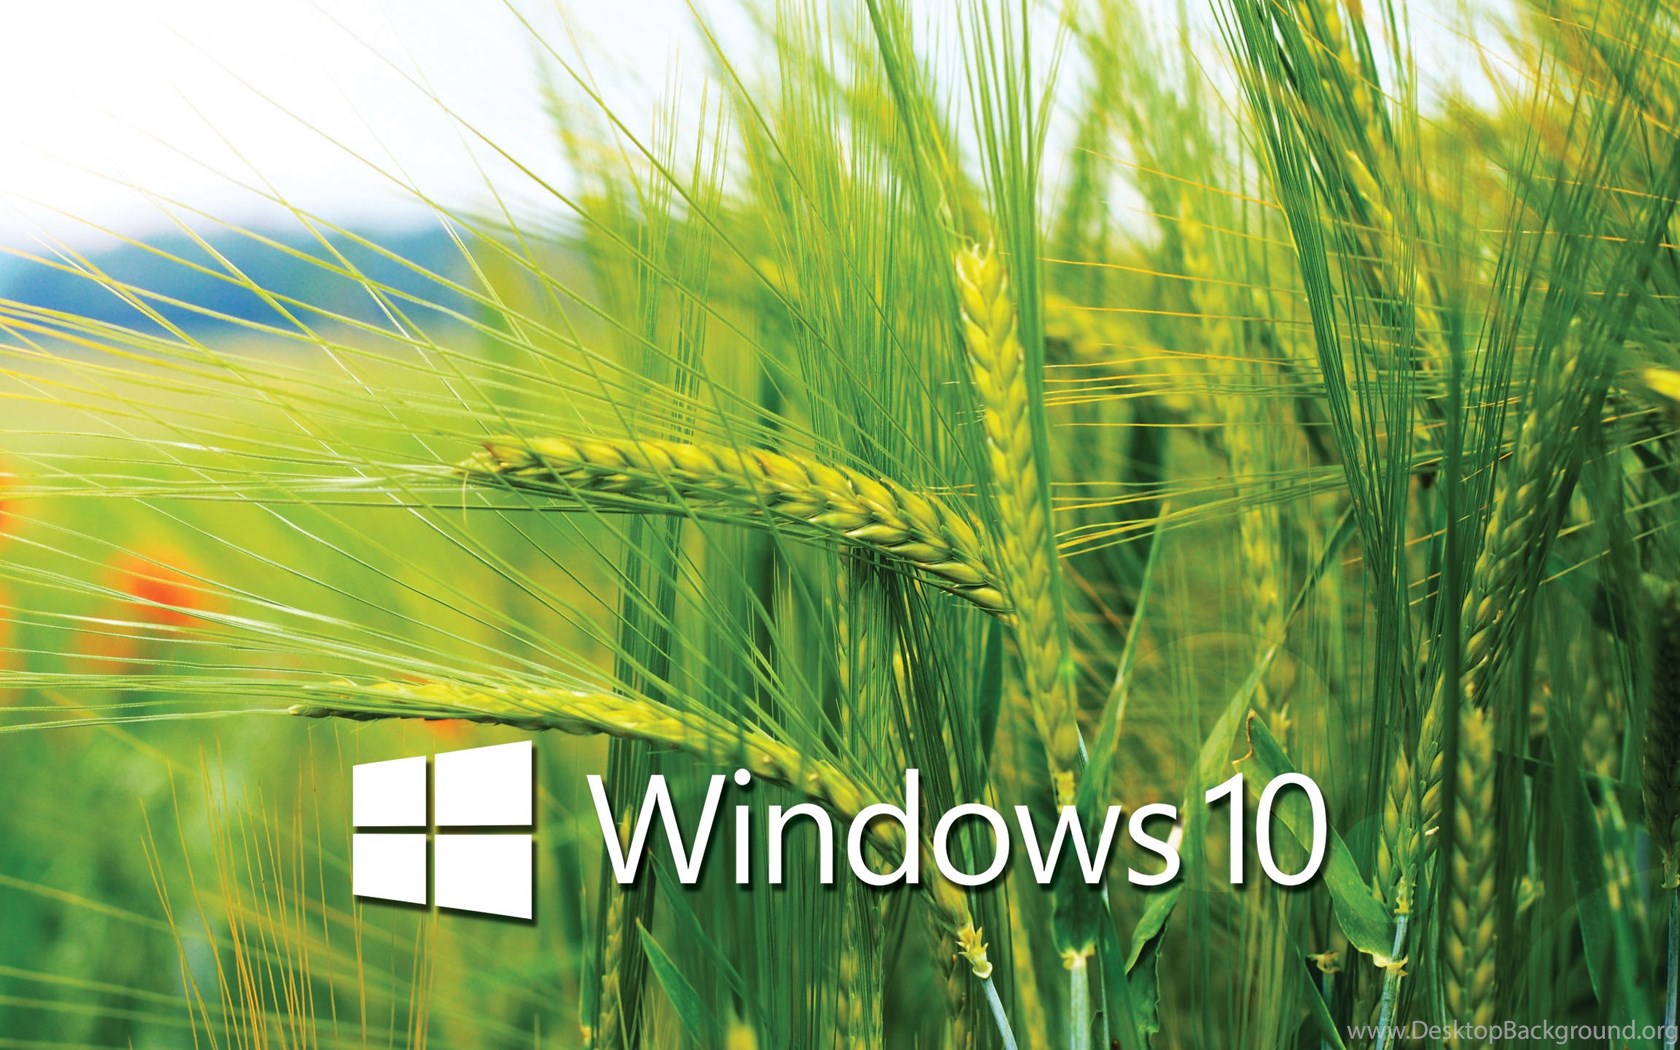 Windows 10 Desktop Wallpapers Windows 10 Wallpapers Desktop Background